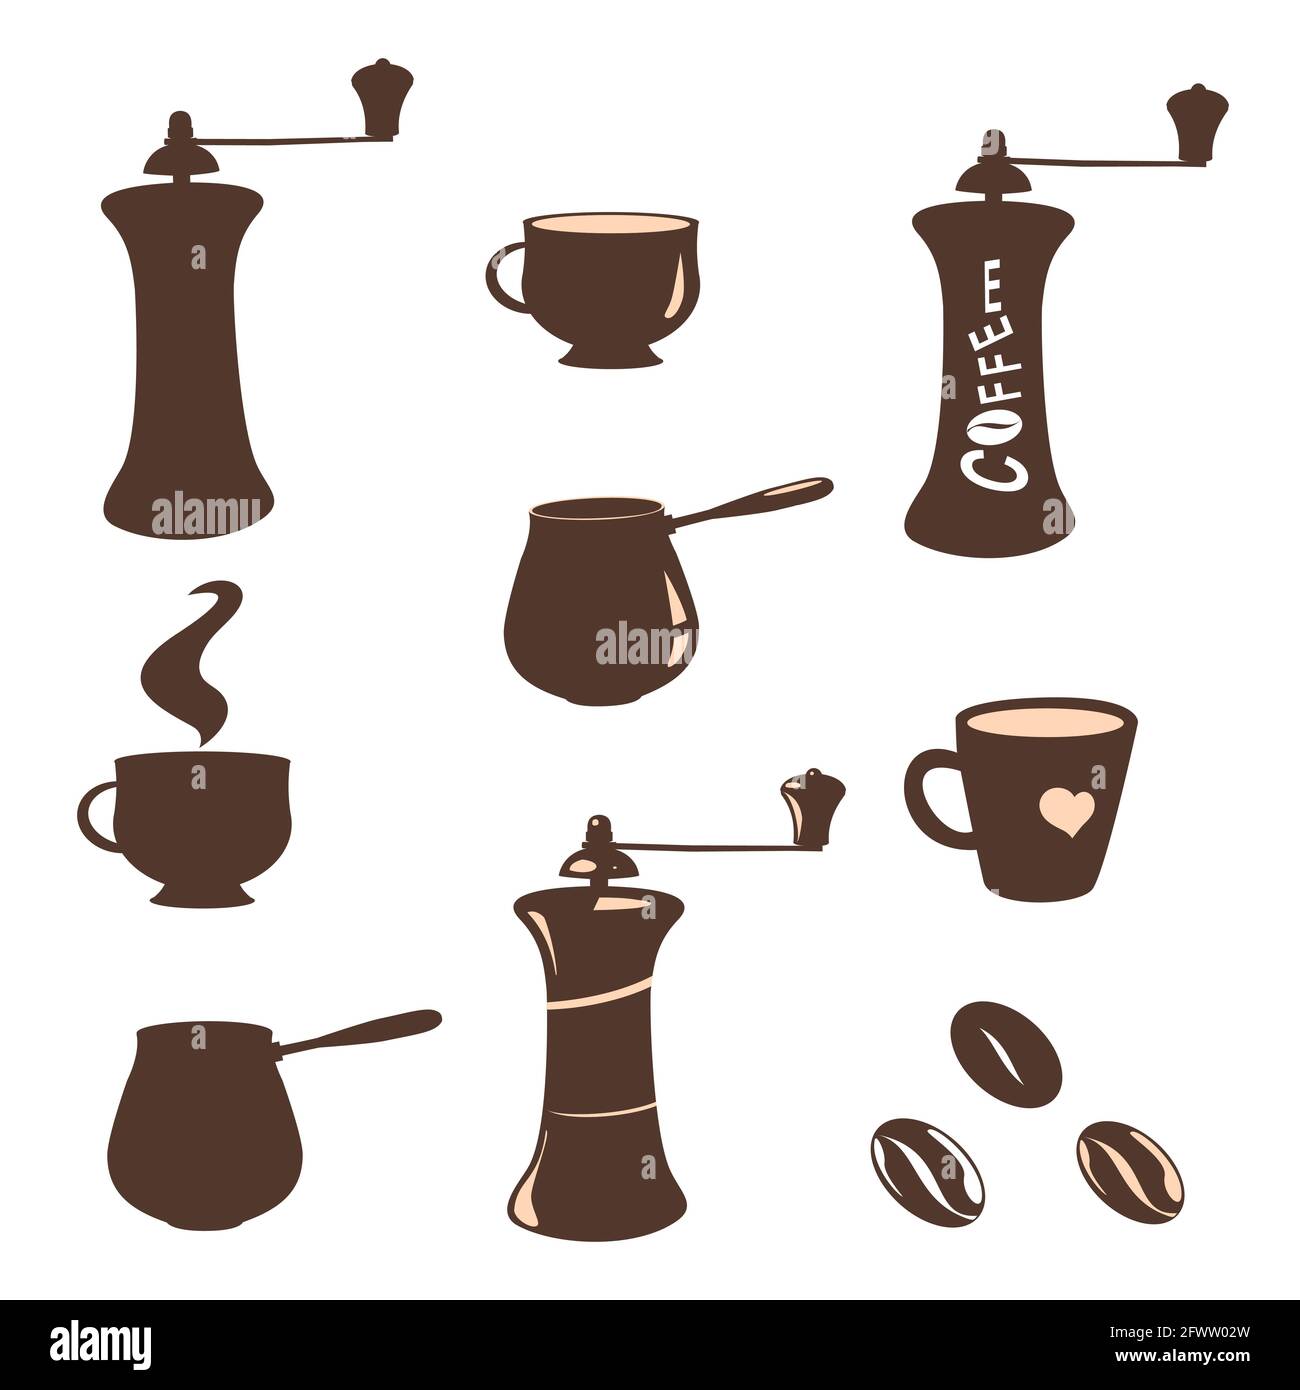 Ensemble d'images et silhouettes de grains de café, tasses, moulins à café, cafetières. Éléments de conception sur fond blanc. Illustration de Vecteur